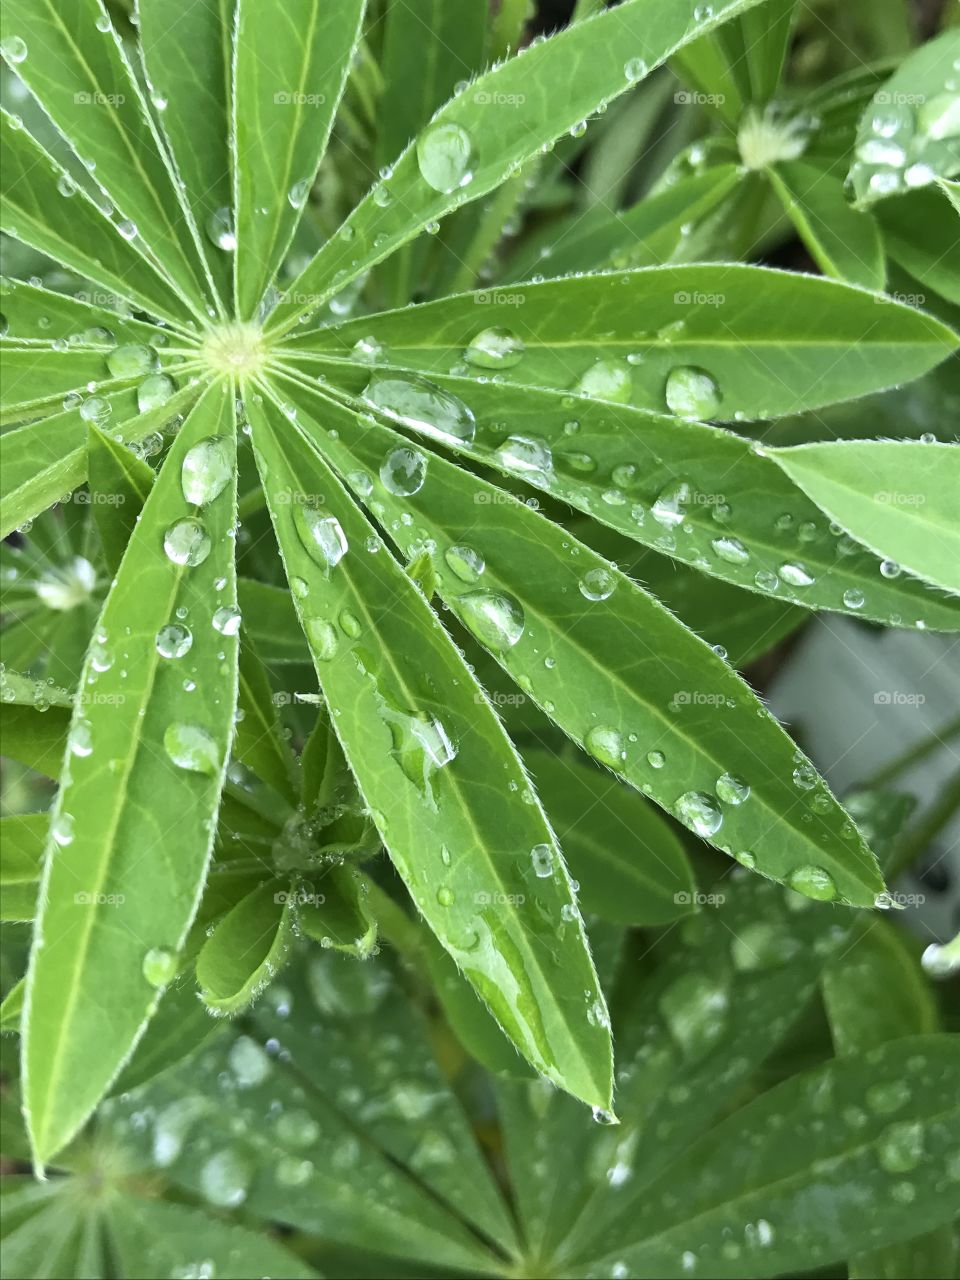 Rainfall on plants